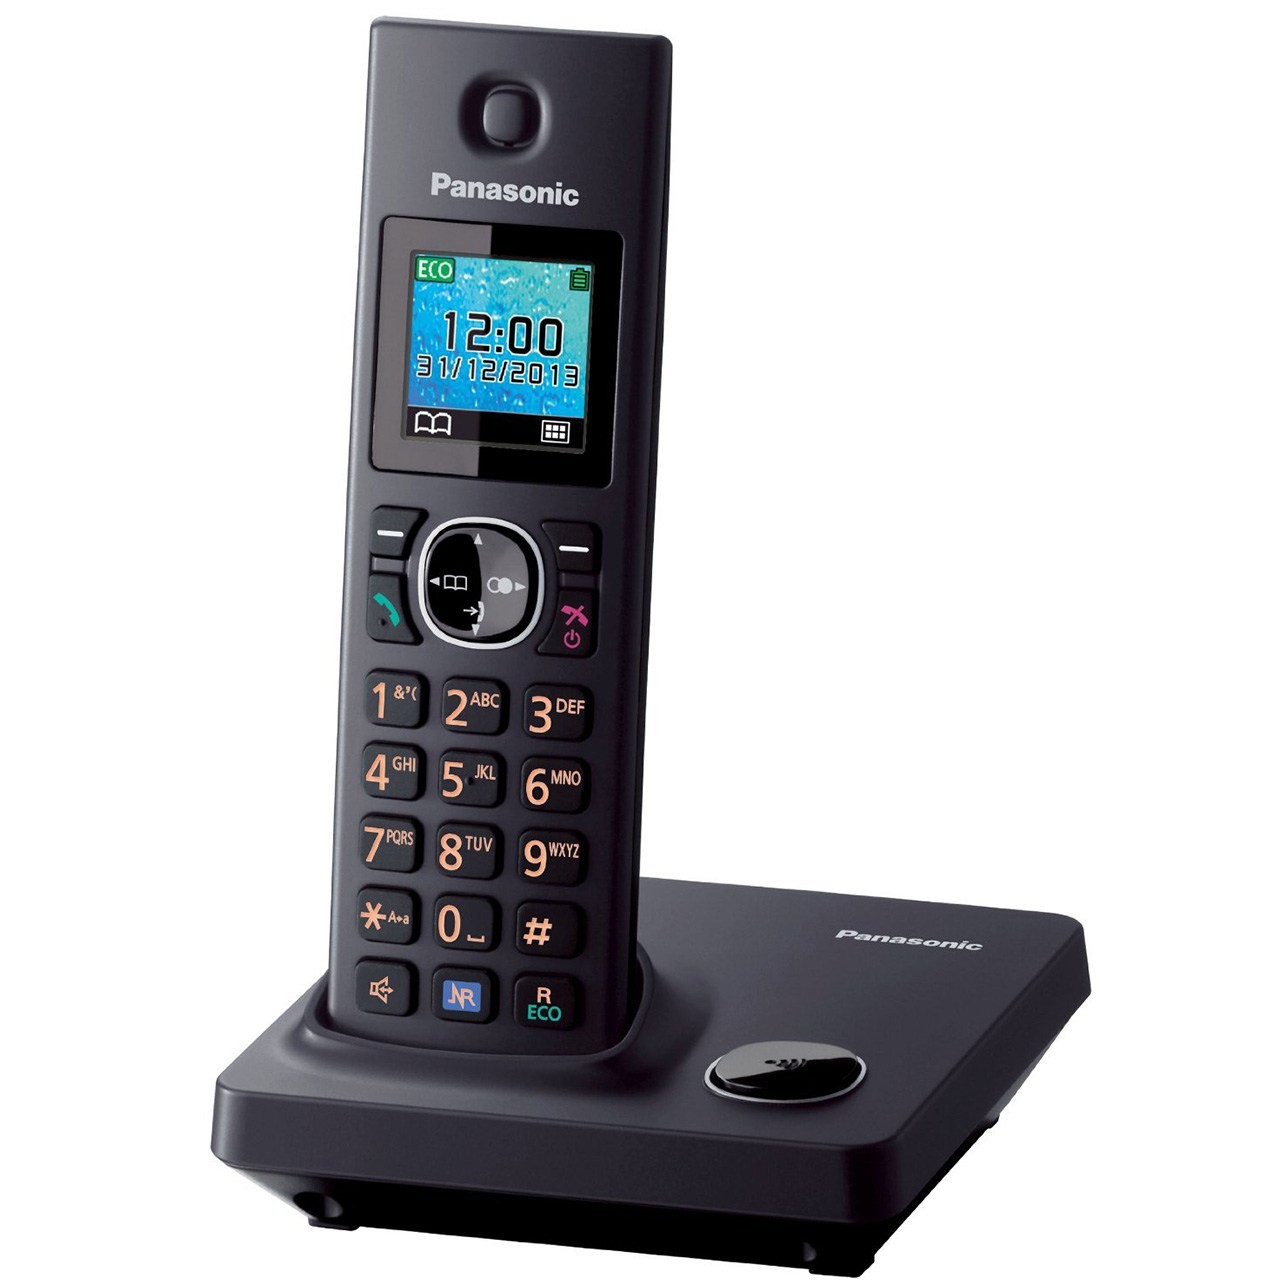 تلفن بی سیم پاناسونیک مدل KX-TG7851FX